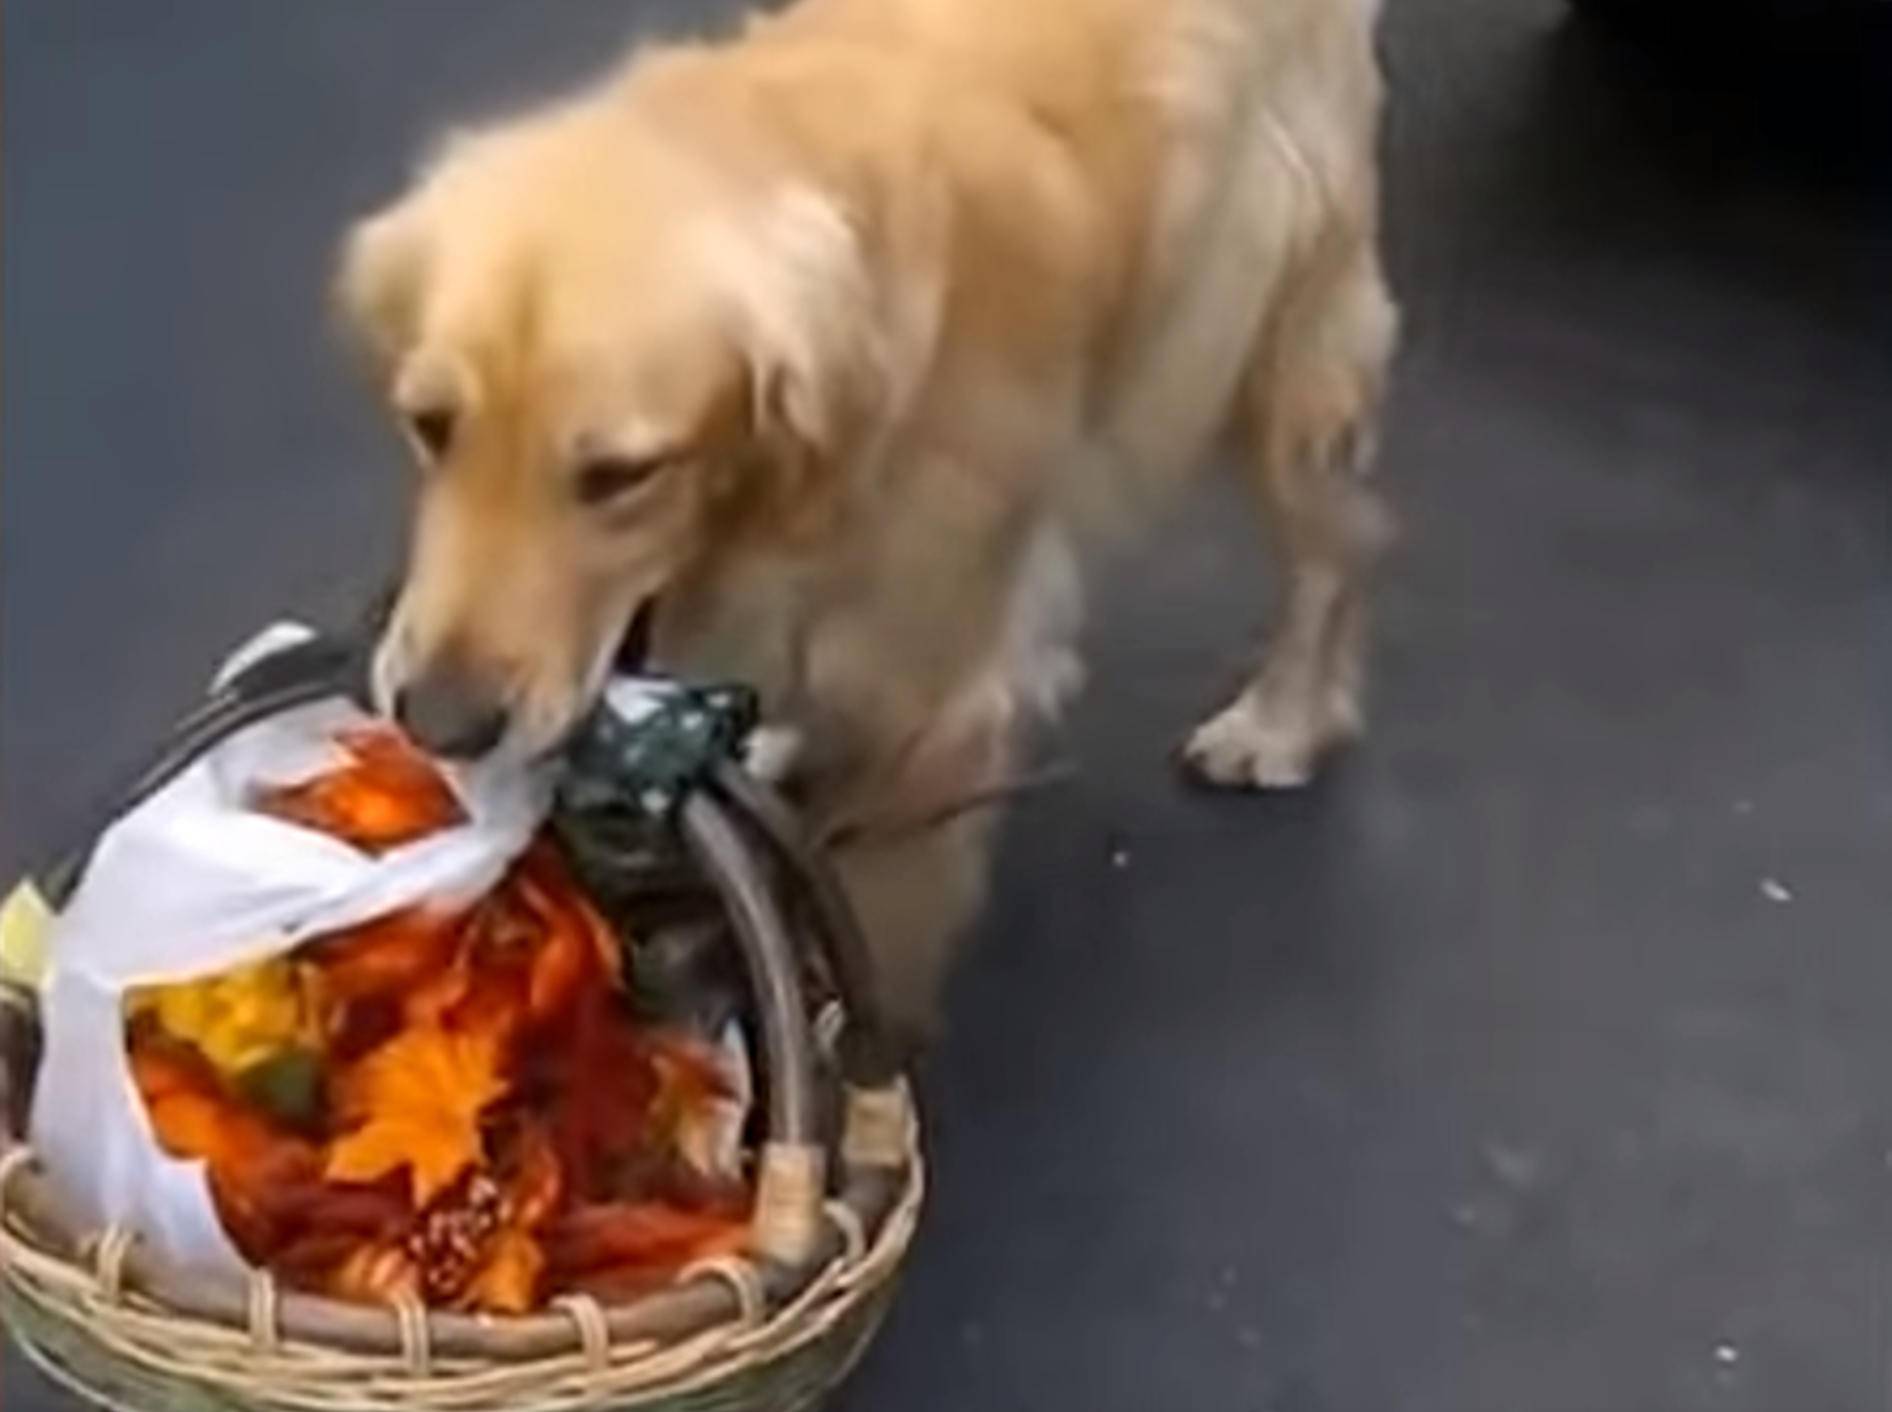 "Darf ich behilflich sein?" Hunde helfen im Haushalt – Bild: YouTube / The Dodo